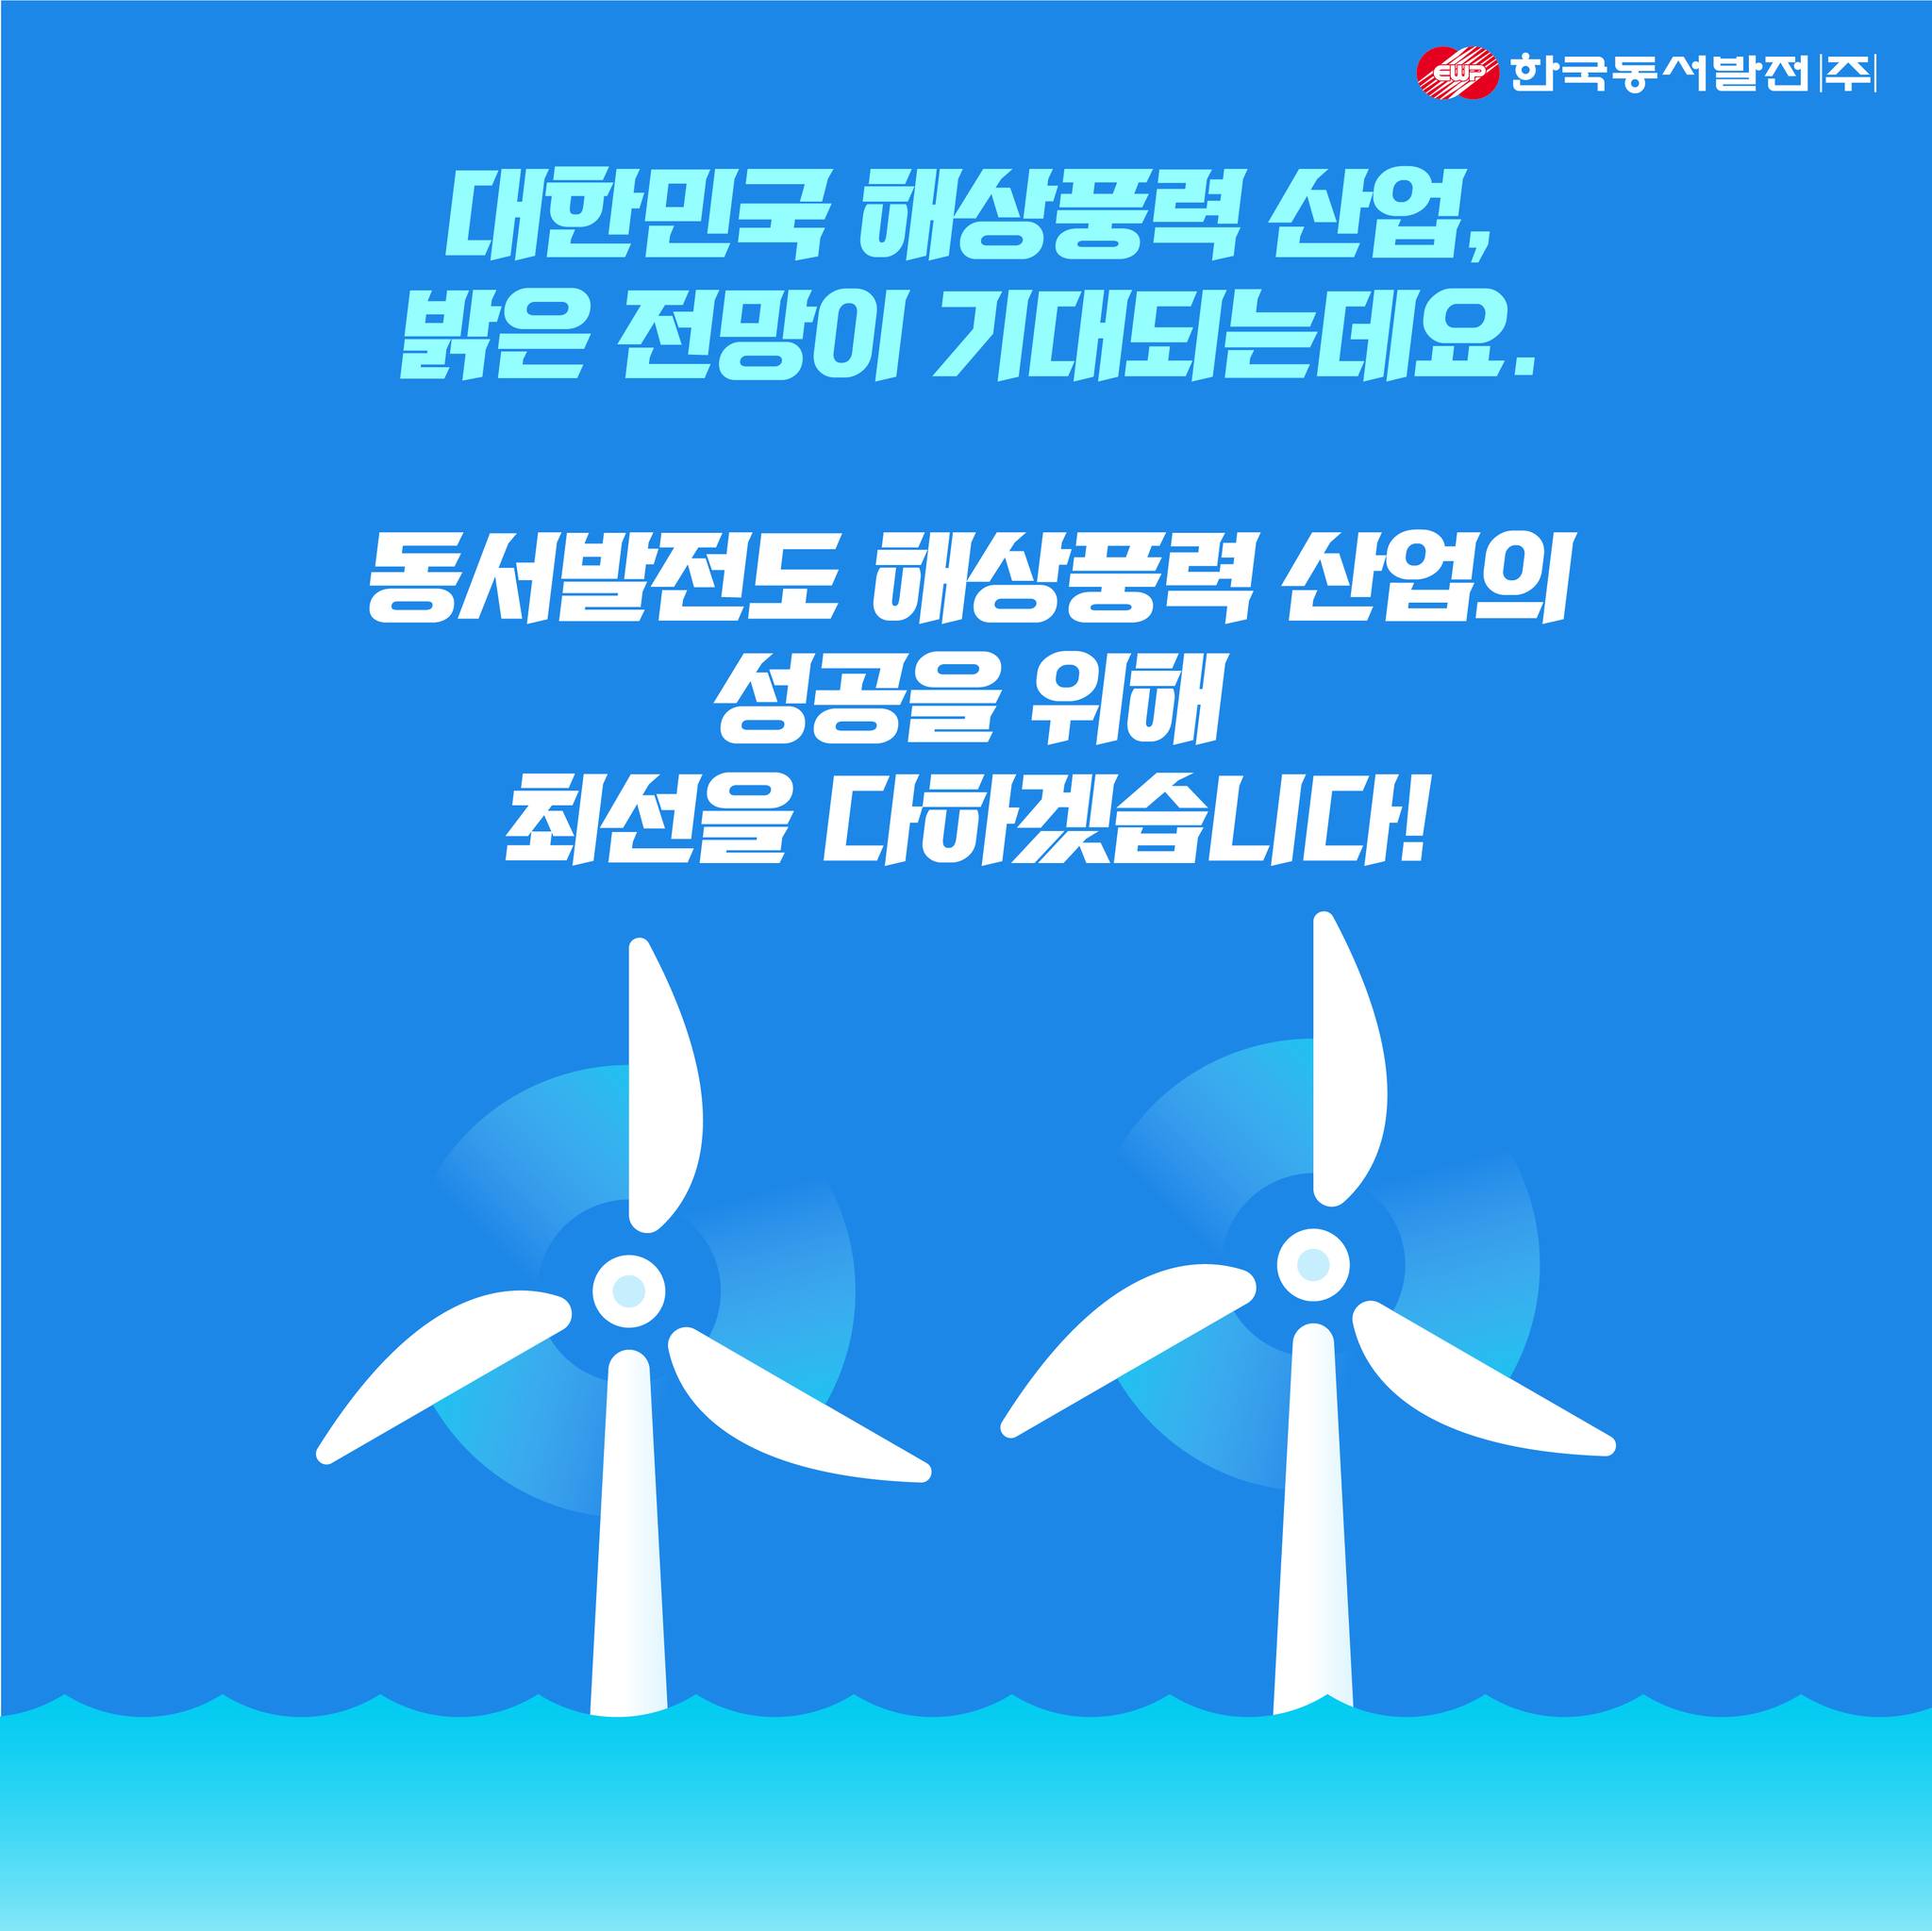 한국동서발전 대한민국 해상풍력 산업, 밝은 전망이 기대되는데요. 동서발전도 해상풍력 산업의 성공을 위해 최선을 다하겠습니다!